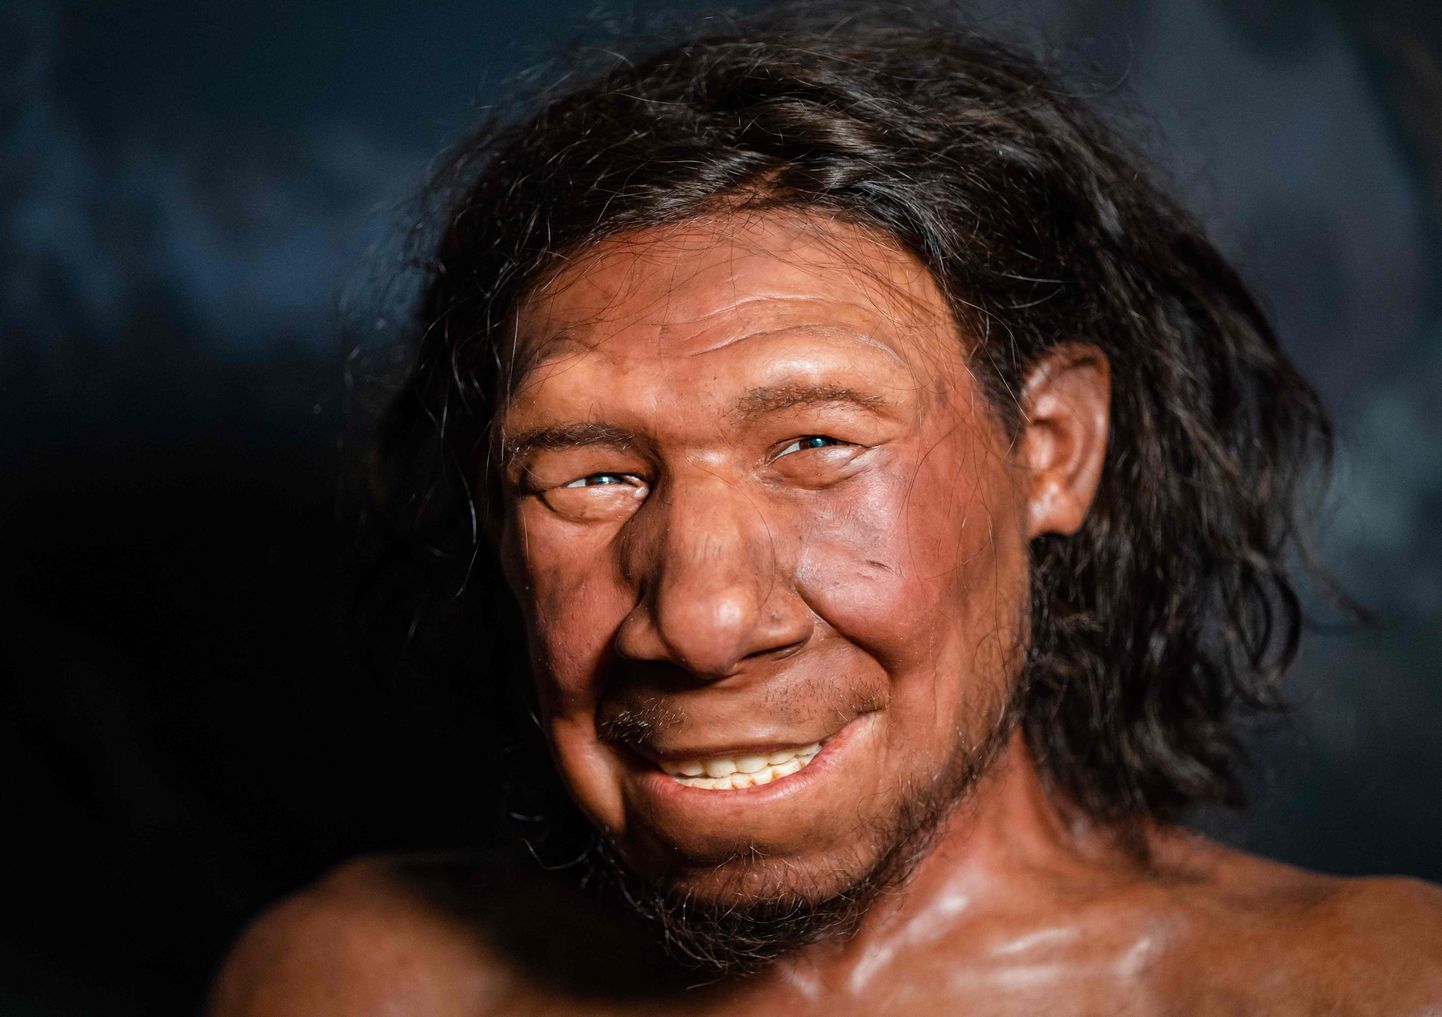 Kõige vanem neandertallane, mis Hollandist leitud on, hüüdnimega Krijn. Asub Hollandi riiklikus antiigimuuseumis, Leidenis.